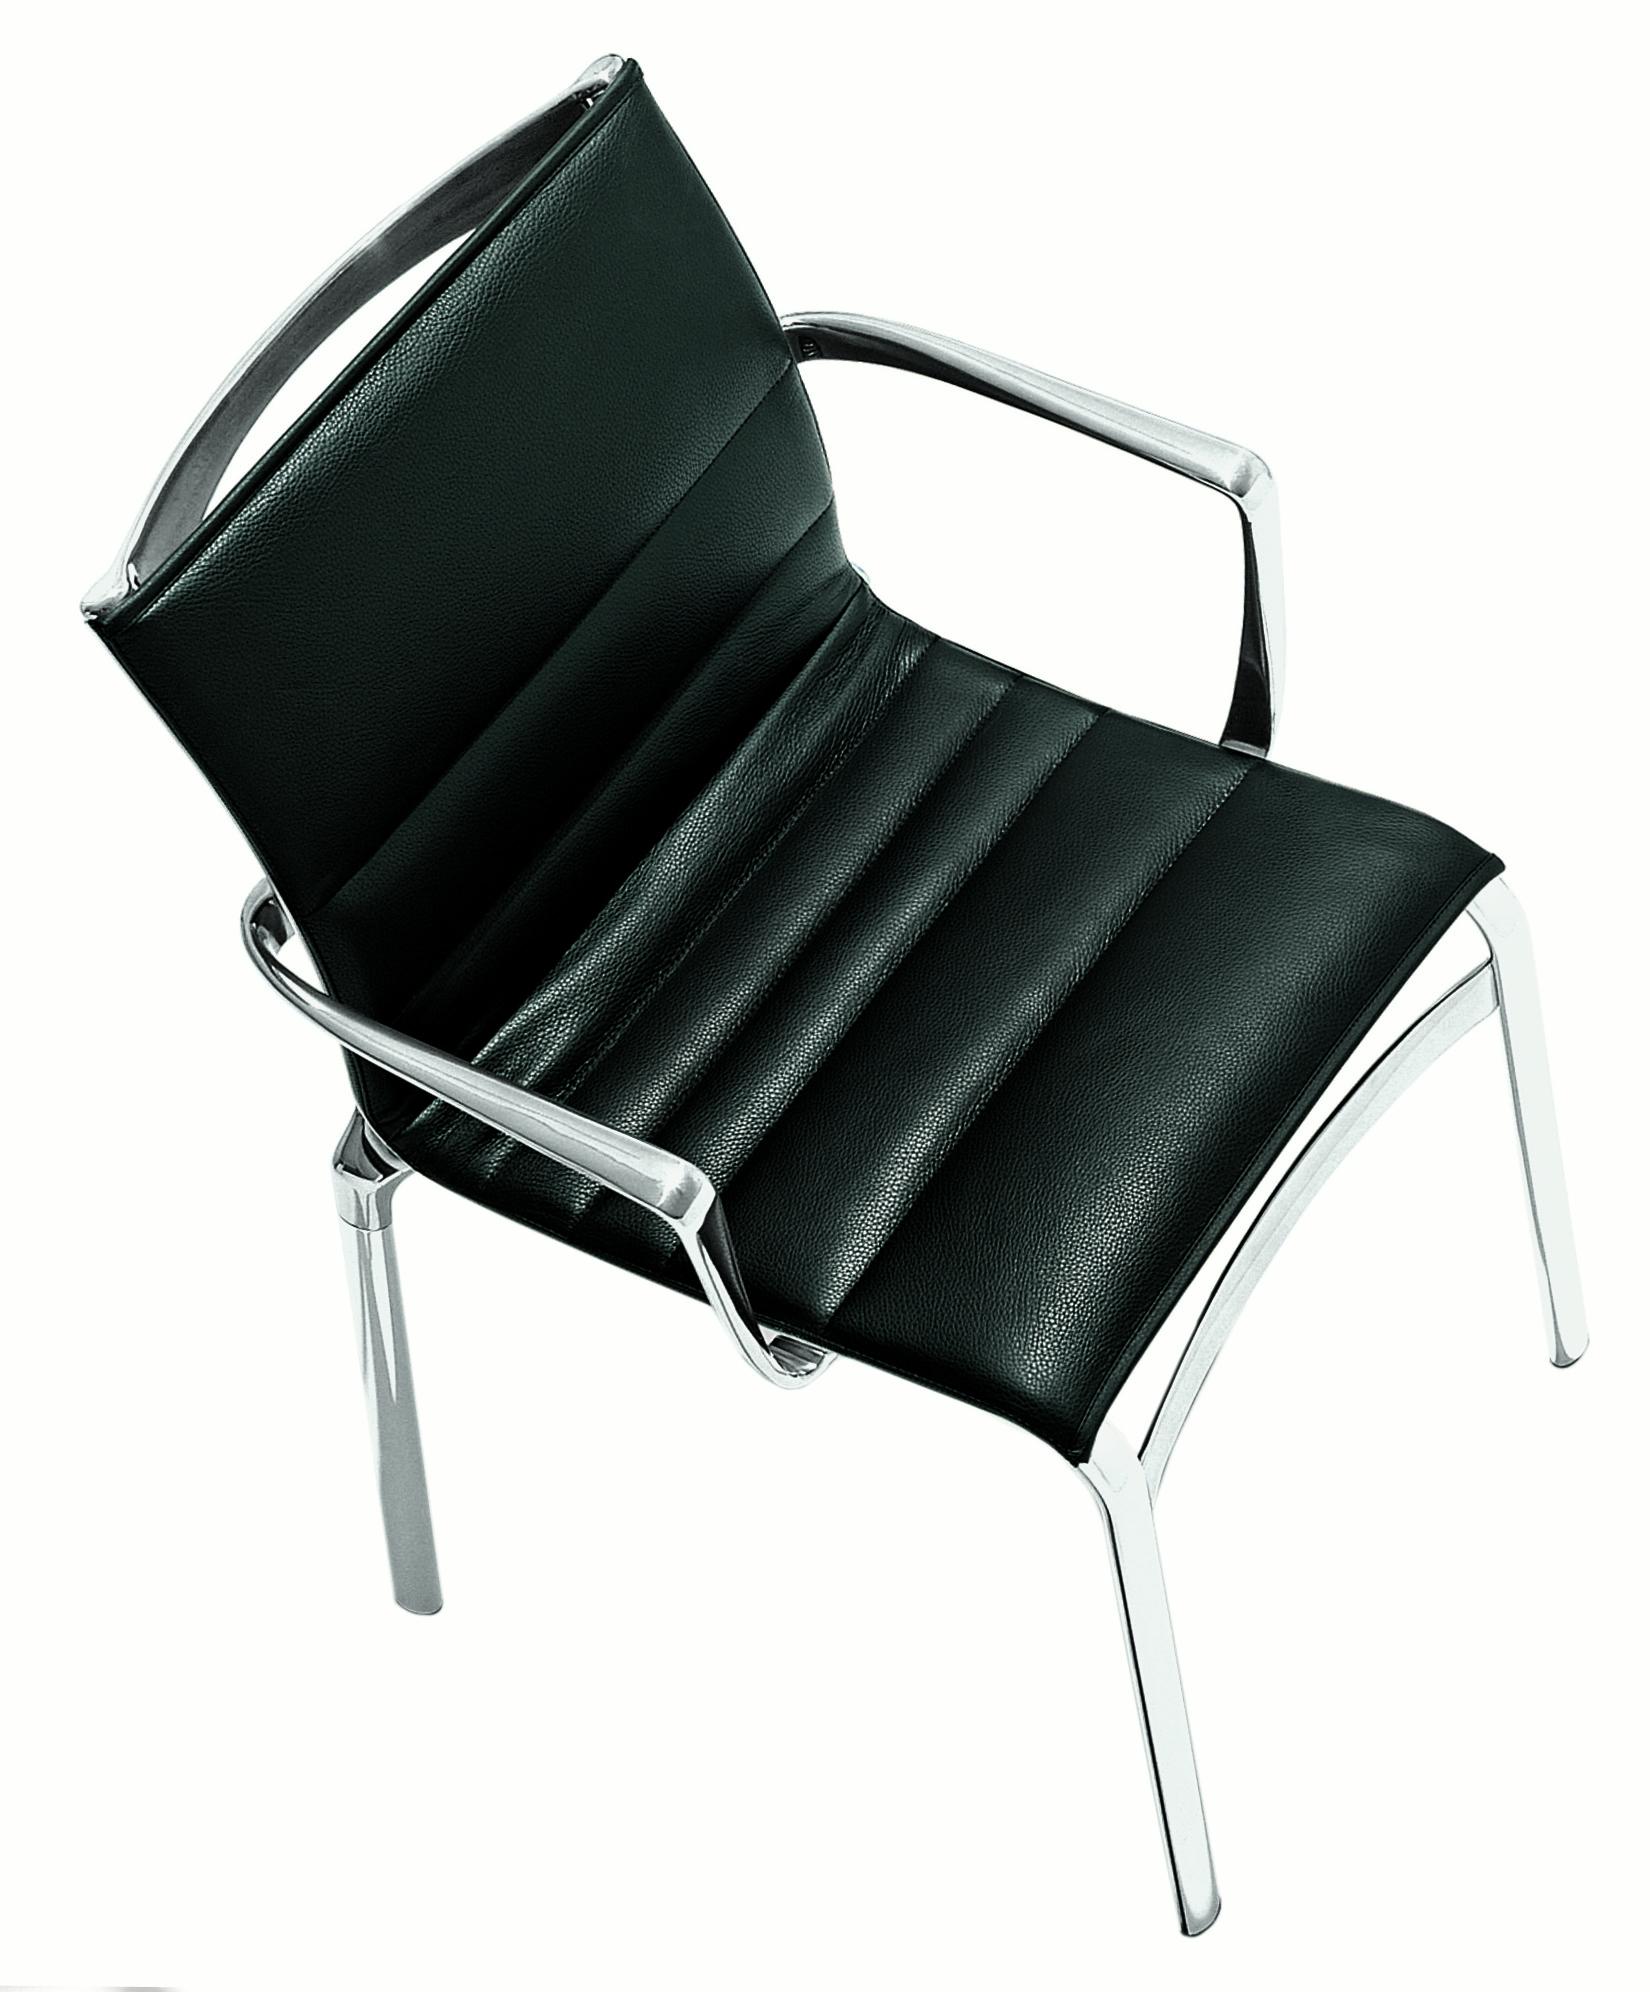 Alias 417 Highframe 40 Stuhl mit schwarzem Ledersitz und verchromtem Aluminiumgestell von Alberto Meda

Stapelbarer Stuhl mit Armlehnen, Struktur aus stranggepresstem Aluminiumprofil und Elementen aus Aluminiumdruckguss. Sitz und Rückenlehne aus